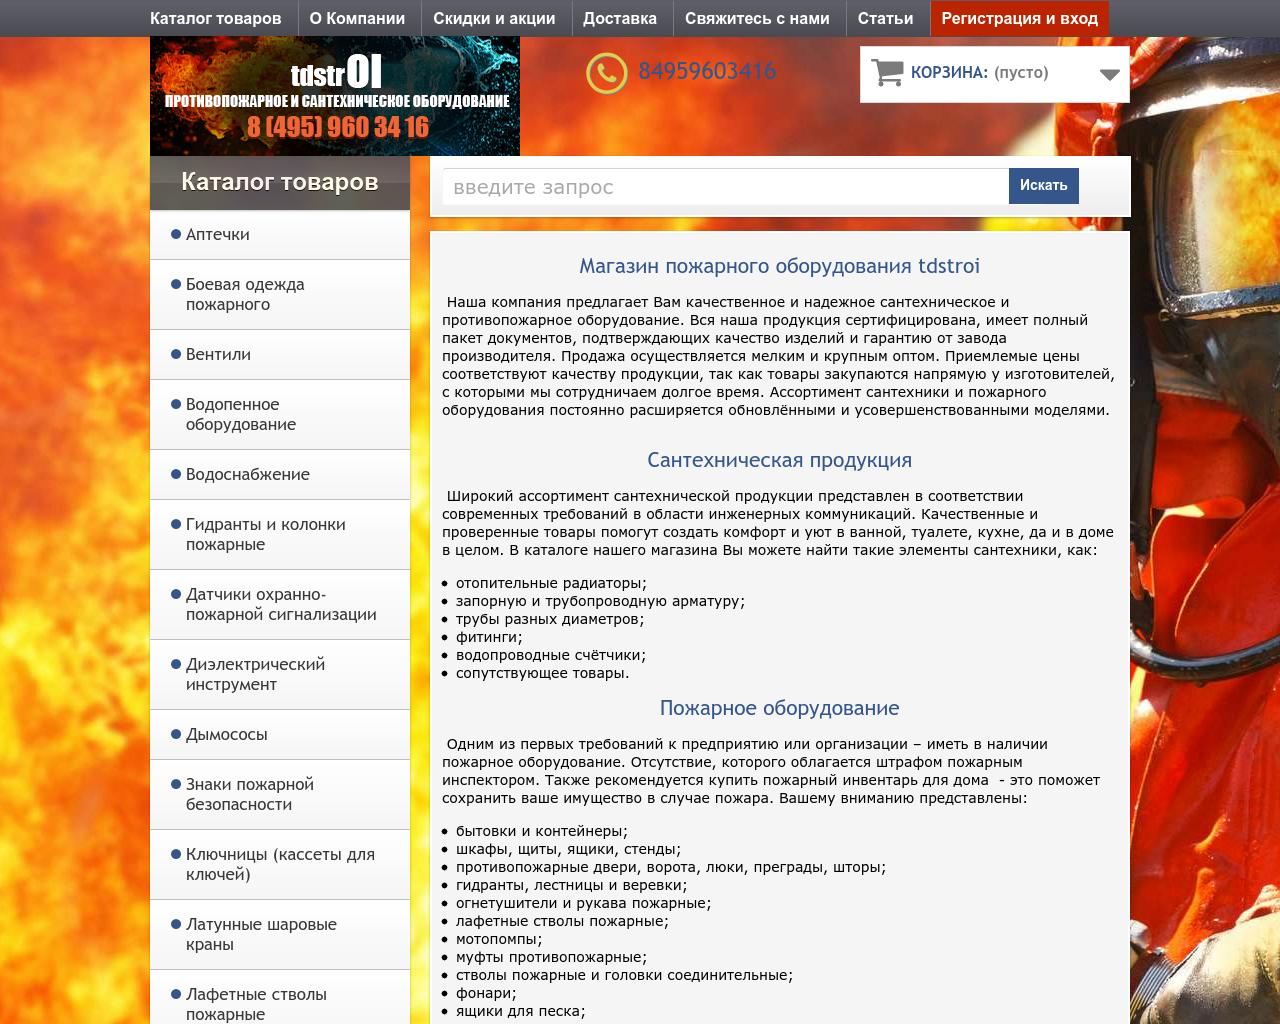 Изображение сайта tdstroi.ru в разрешении 1280x1024